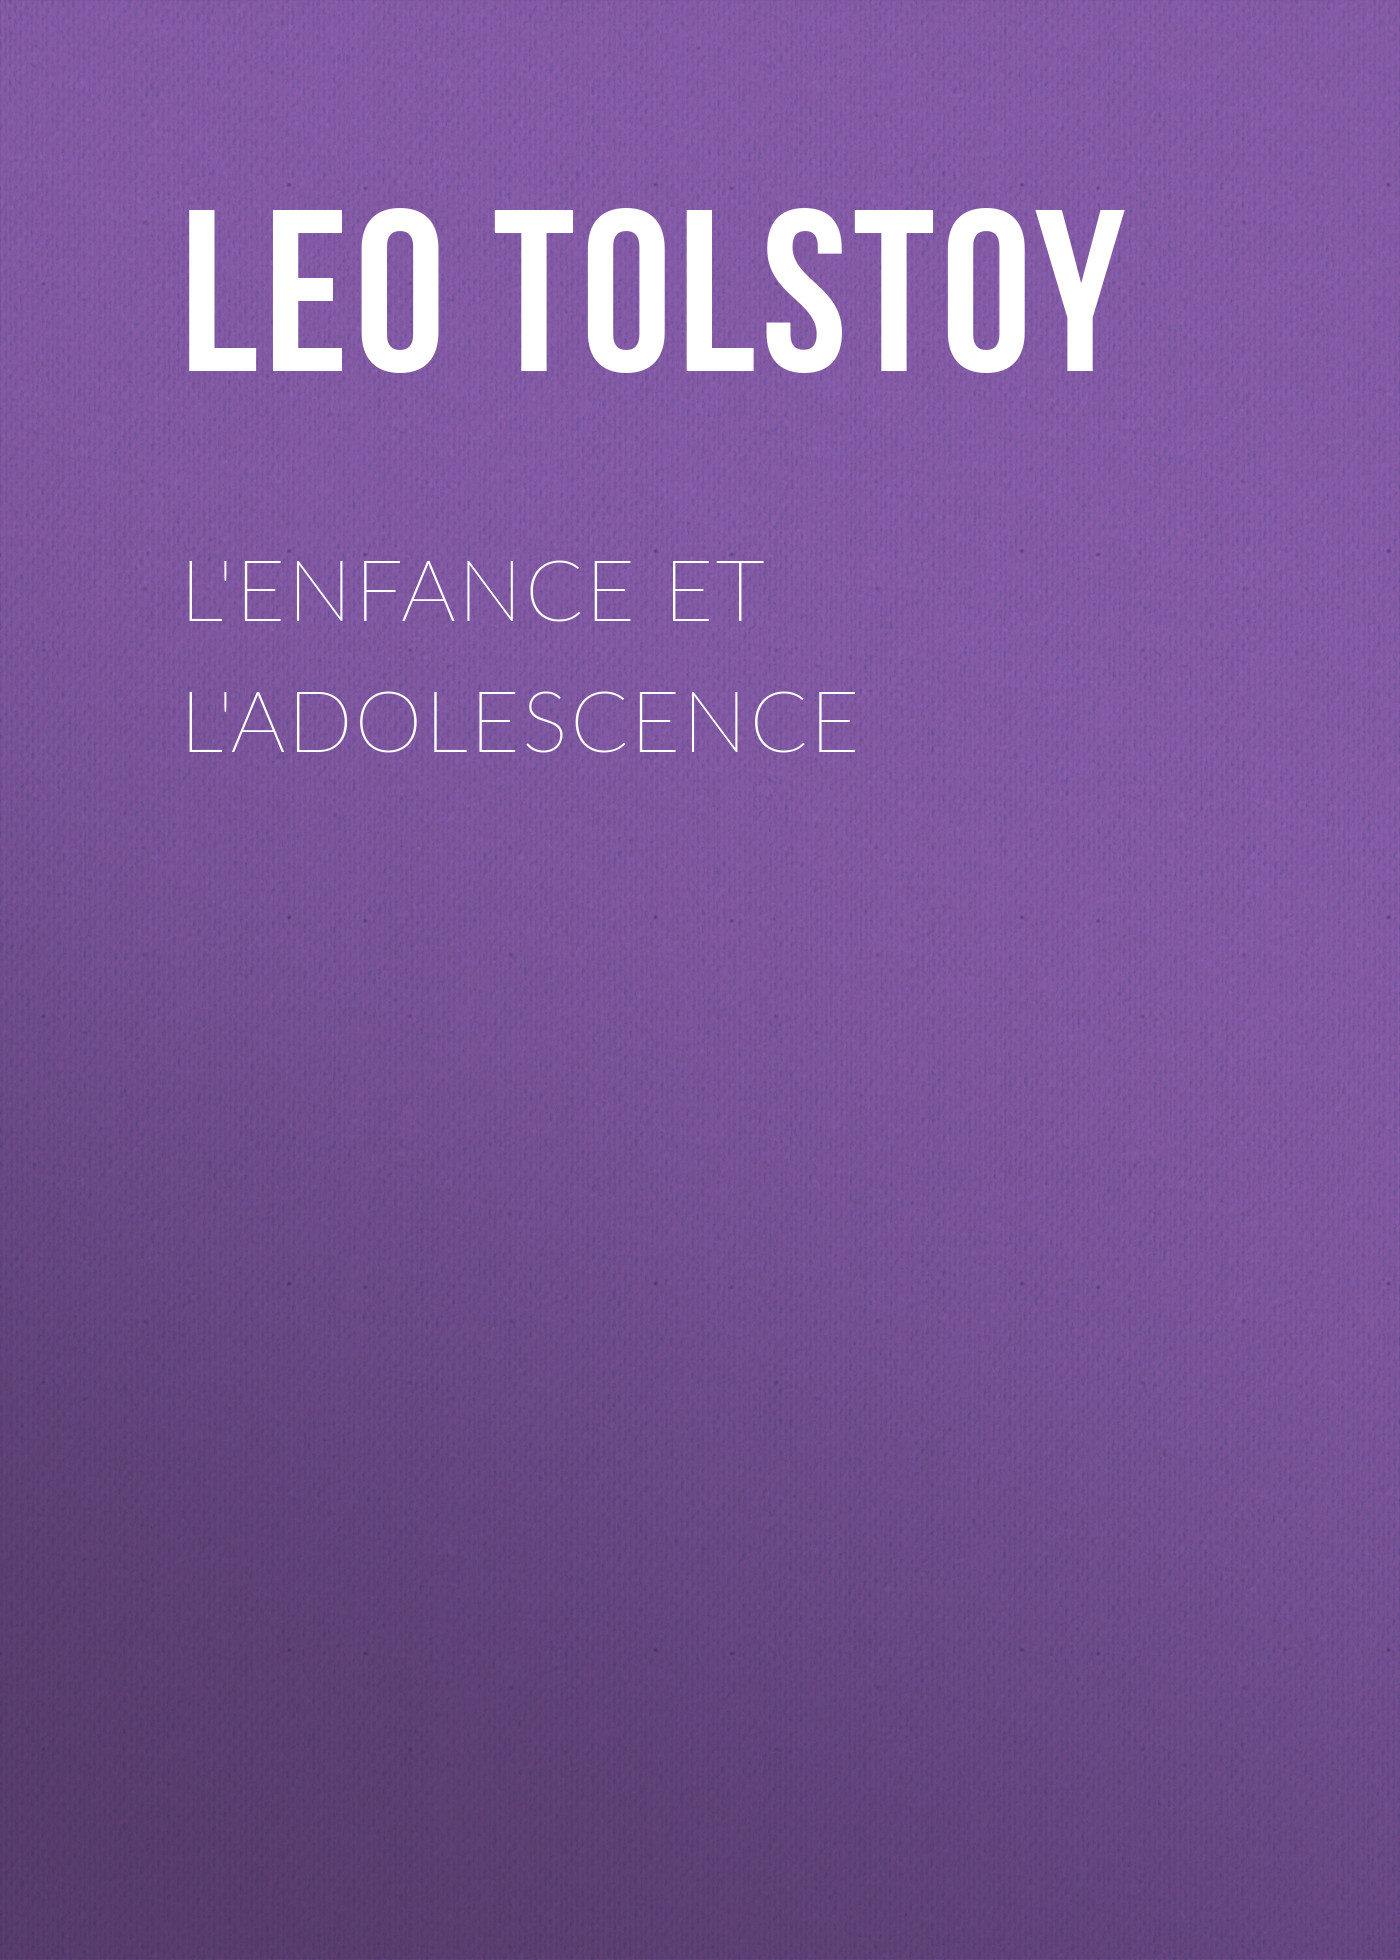 Книга L'enfance et l'adolescence из серии , созданная Leo Tolstoy, может относится к жанру Зарубежная классика, Иностранные языки. Стоимость электронной книги L'enfance et l'adolescence с идентификатором 23163195 составляет 5.99 руб.